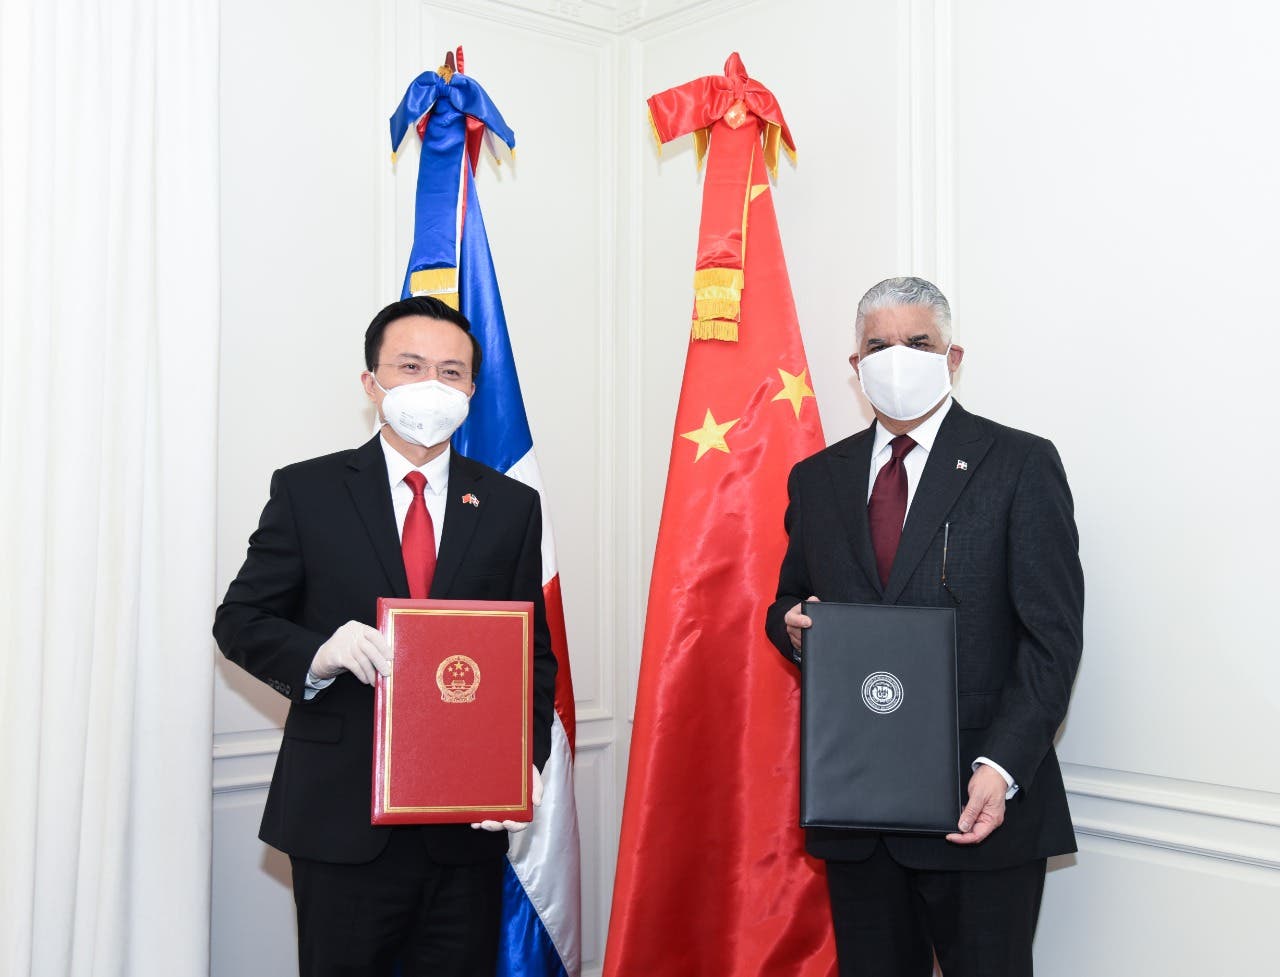 República Dominicana y China conmemoran el II aniversario de sus relaciones diplomáticas